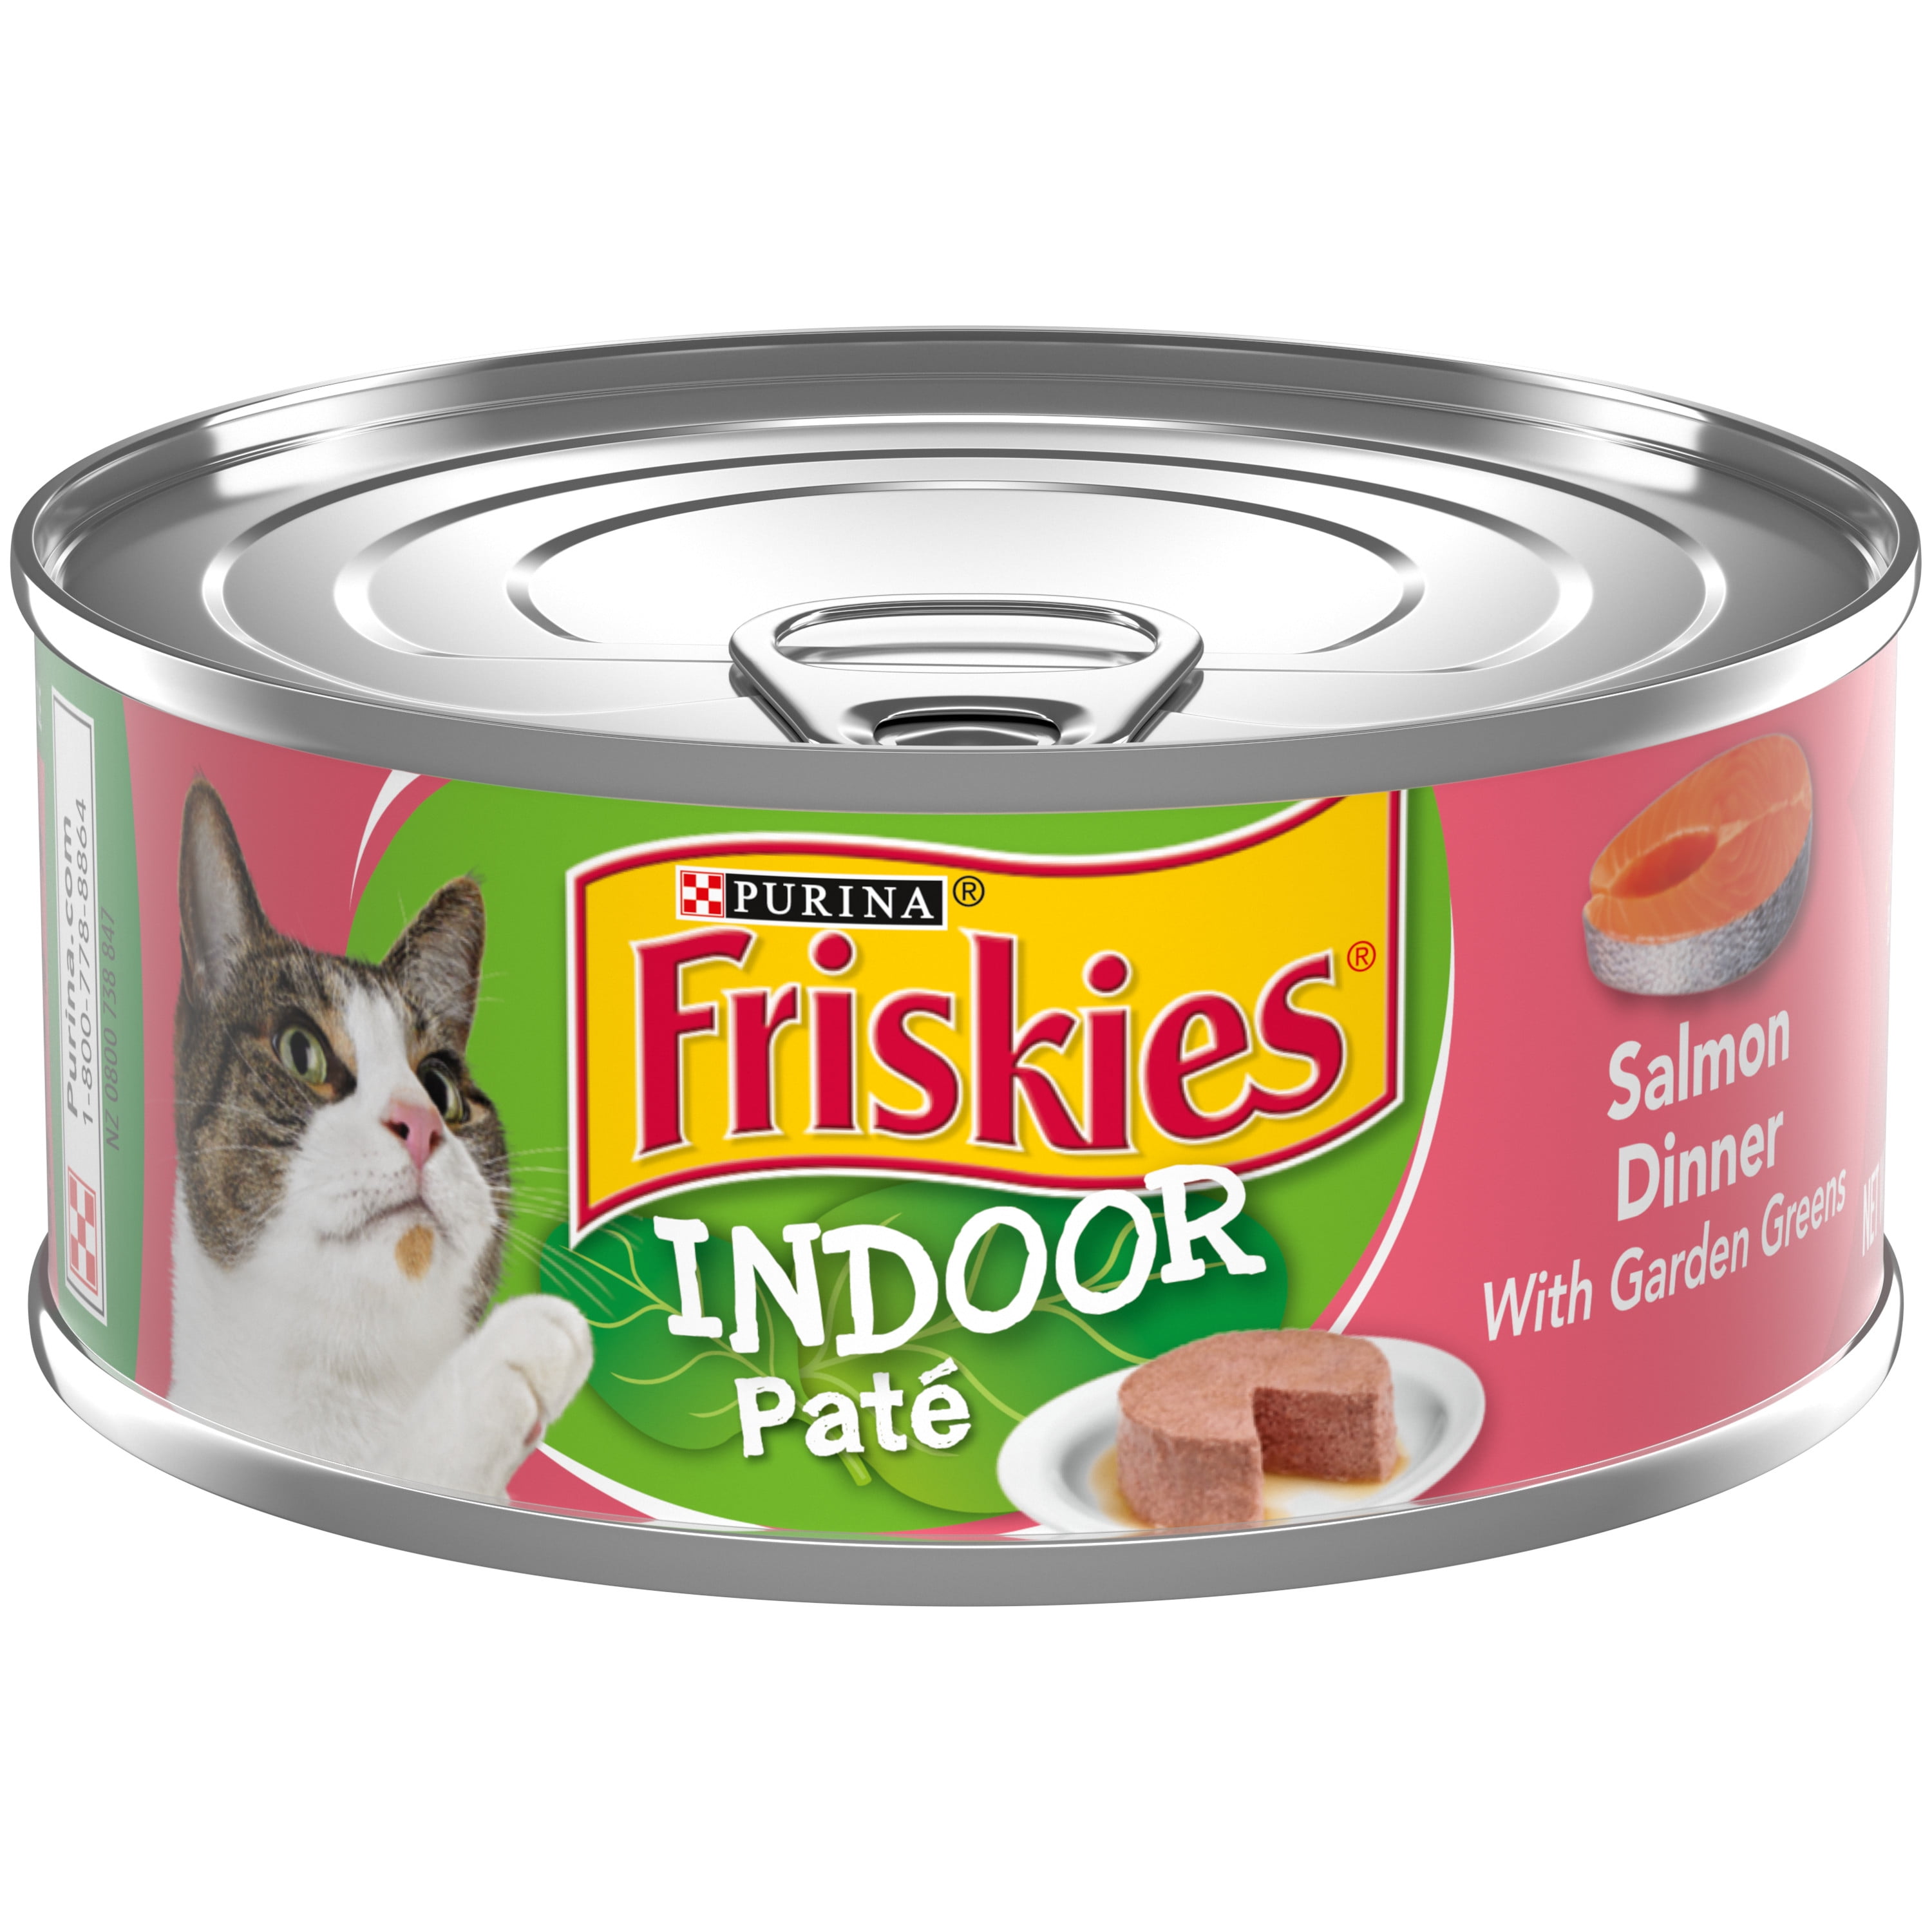 (24 Pack) Friskies Indoor Pate Wet Cat Food, Indoor Salmon Dinner With